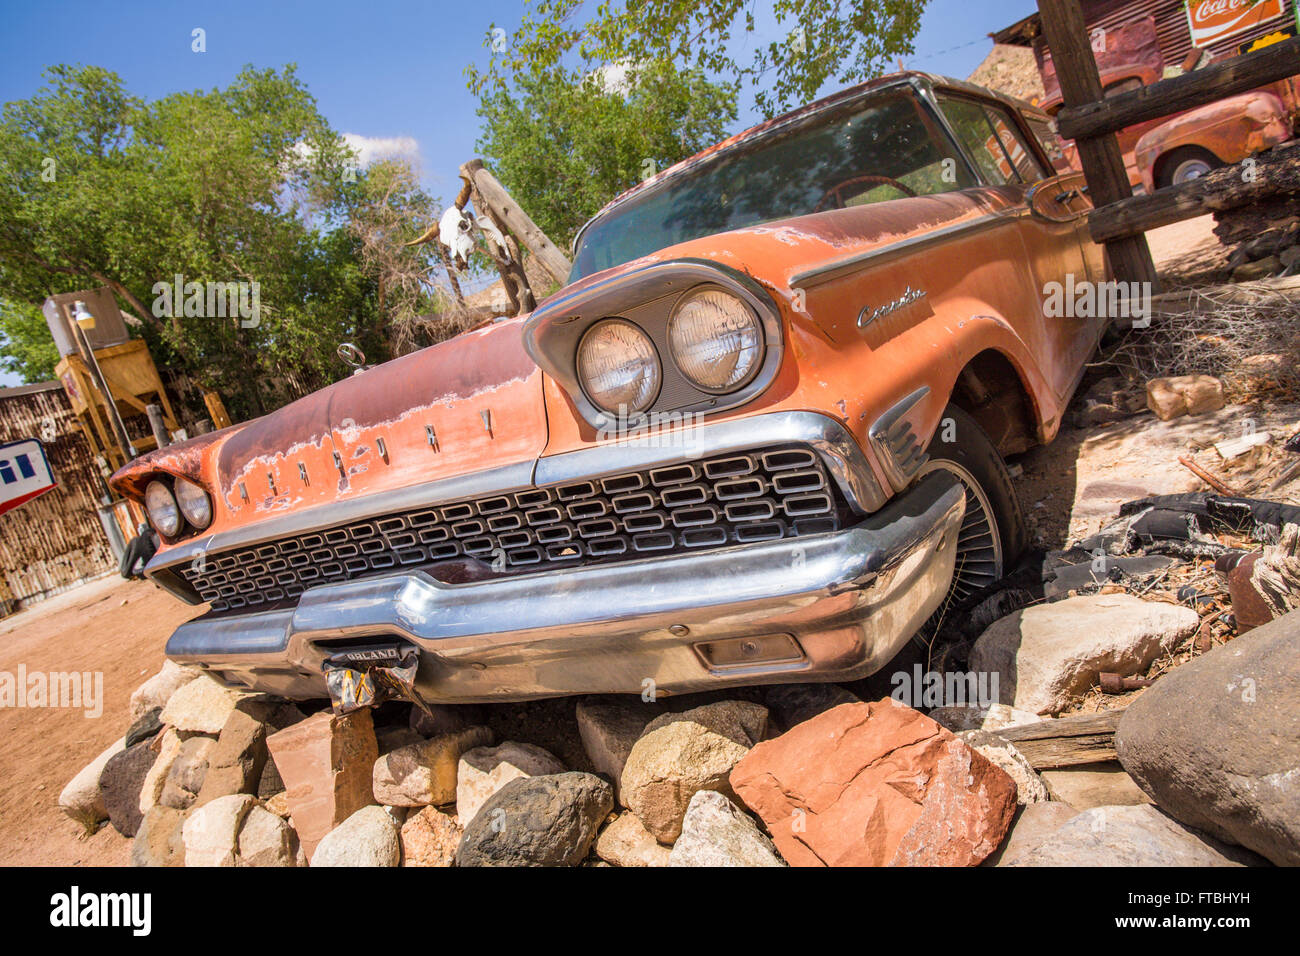 Hackberry, Arizona, Stati Uniti d'America - 8 Maggio 2014: Vista della vecchia Chevy automobile con memorabilia stradale store lungo la Route 66. Foto Stock